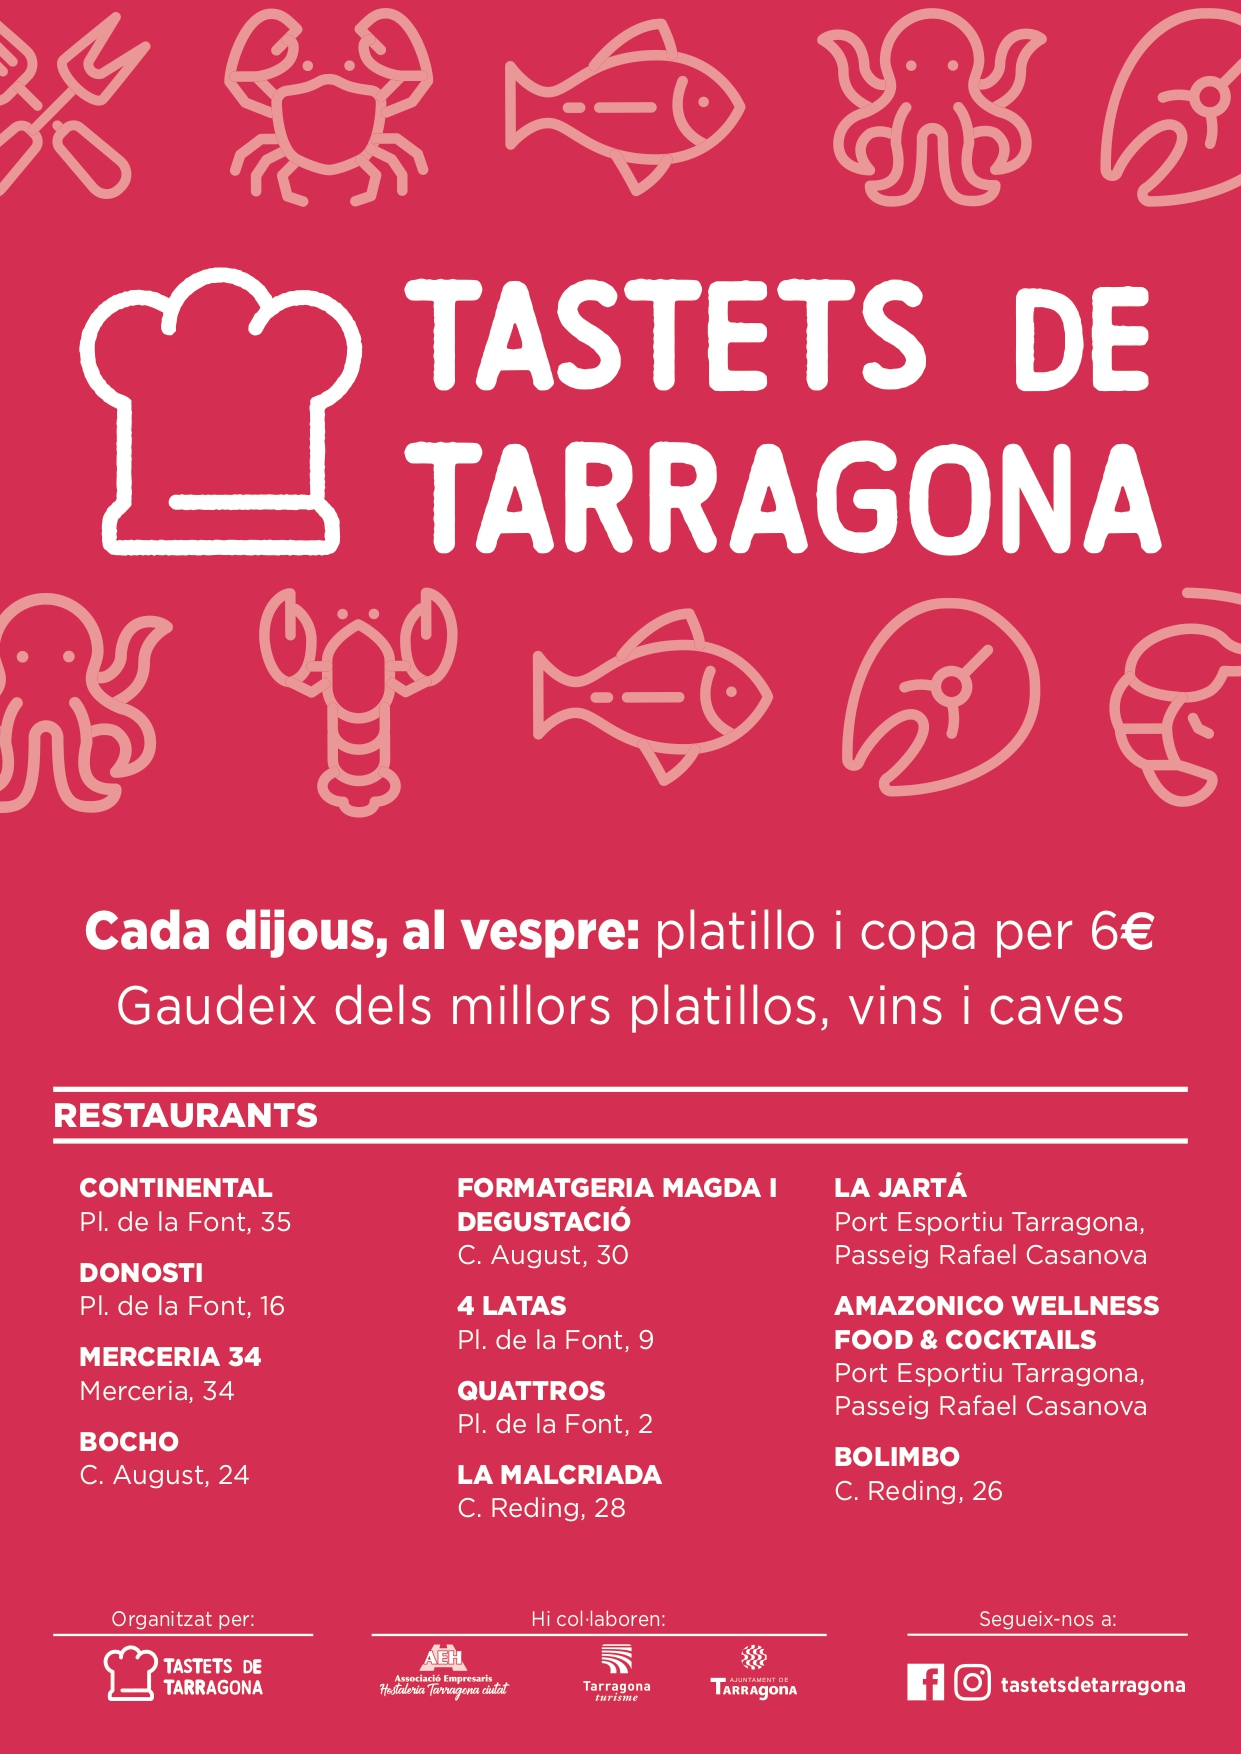 Tastets de Tarragona